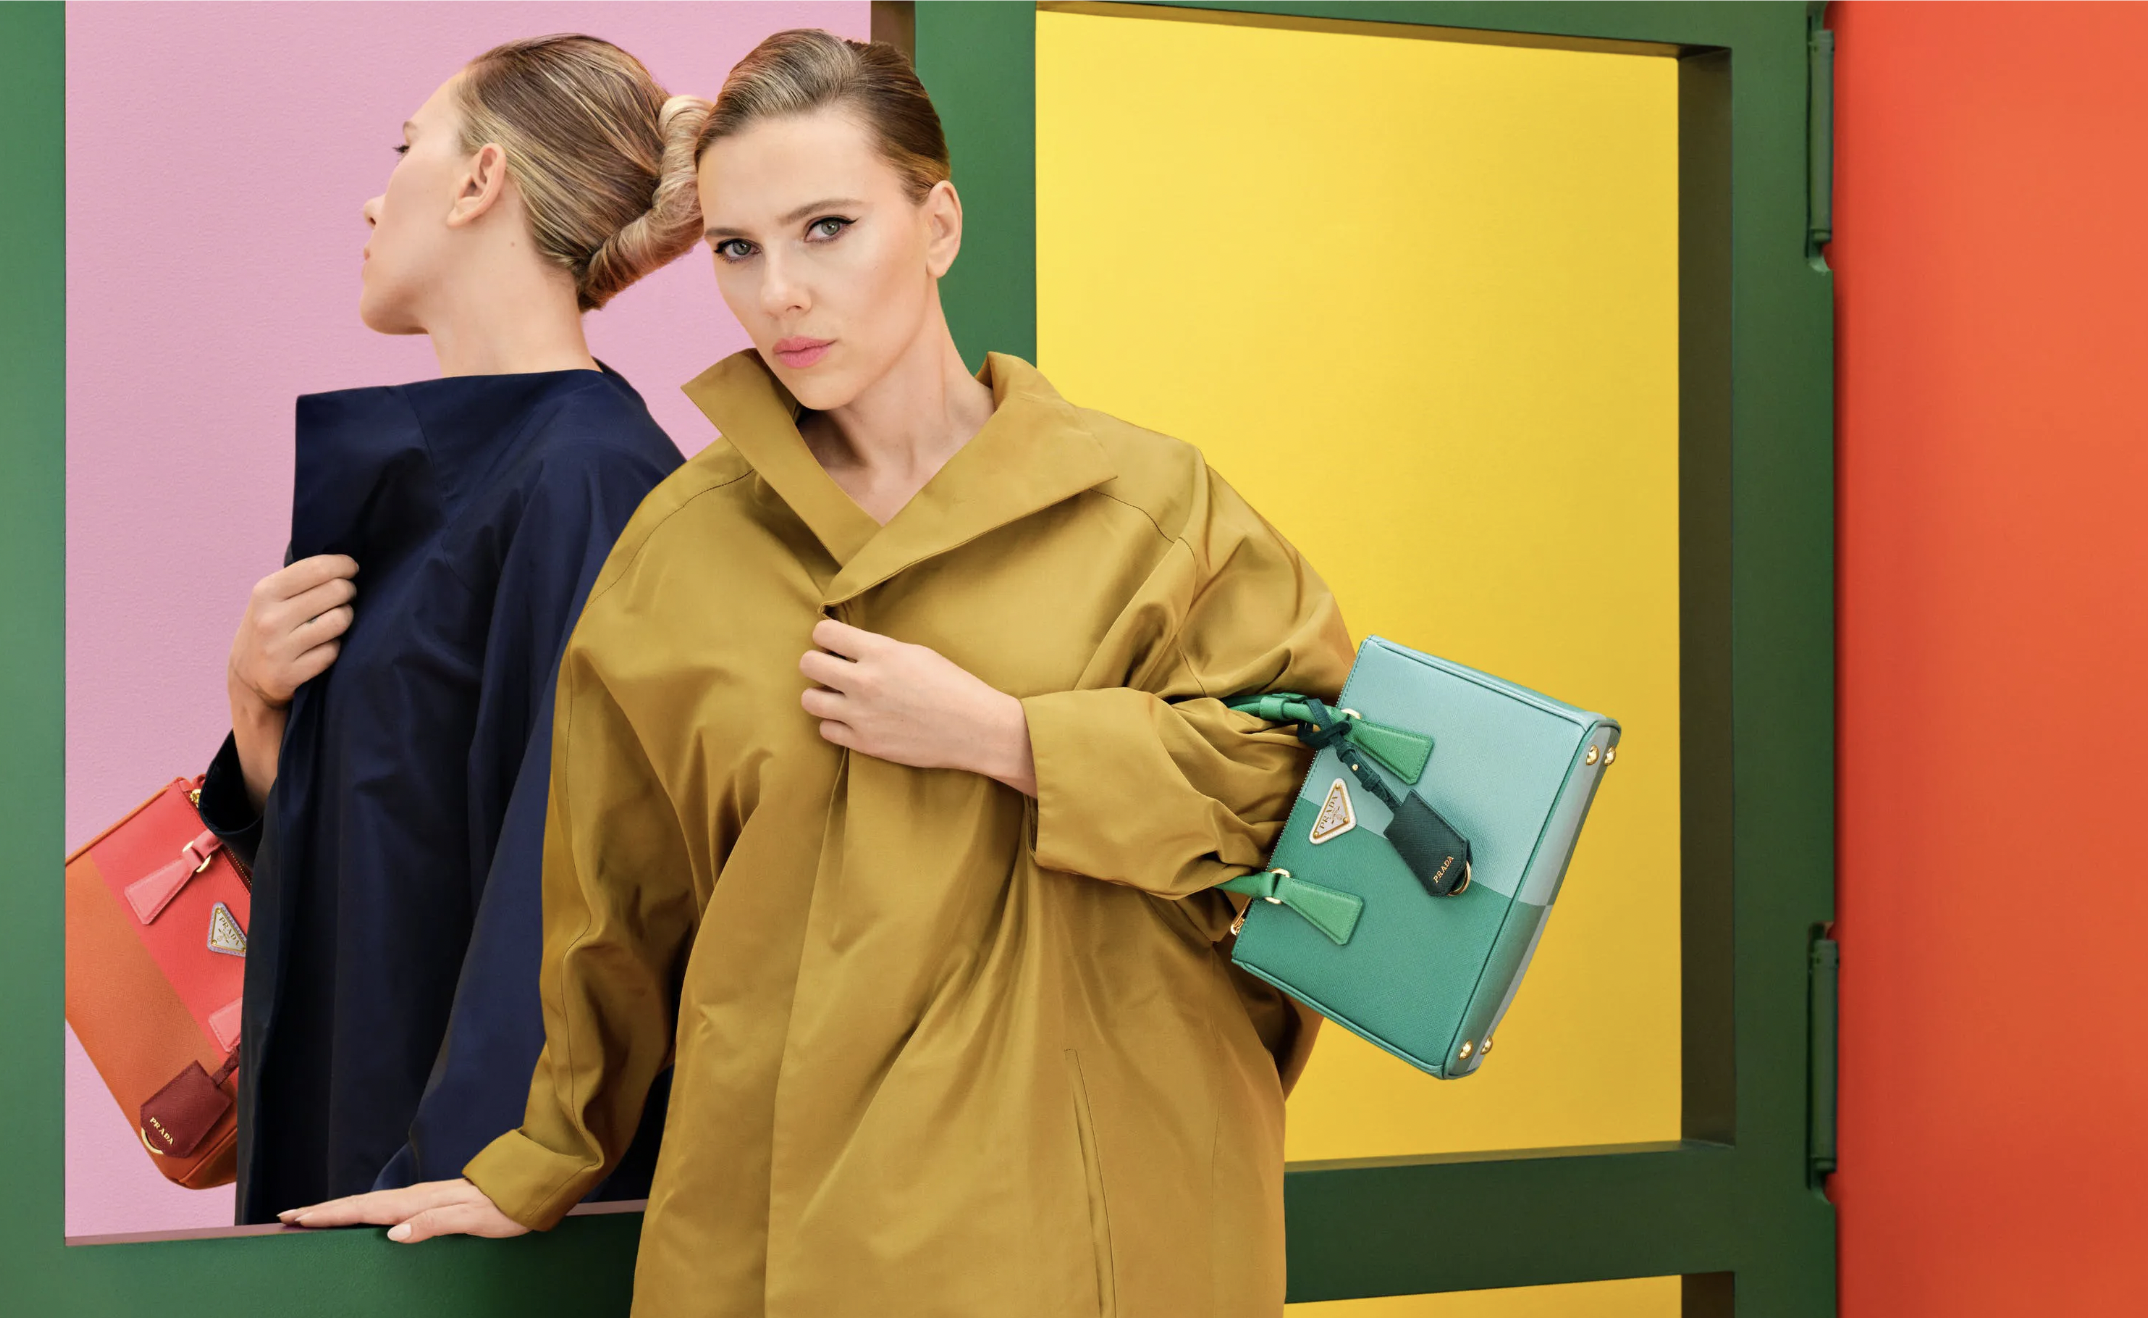  Prada Galleria: La nueva campaña de Prada protagonizada por Scarlett Johansson 